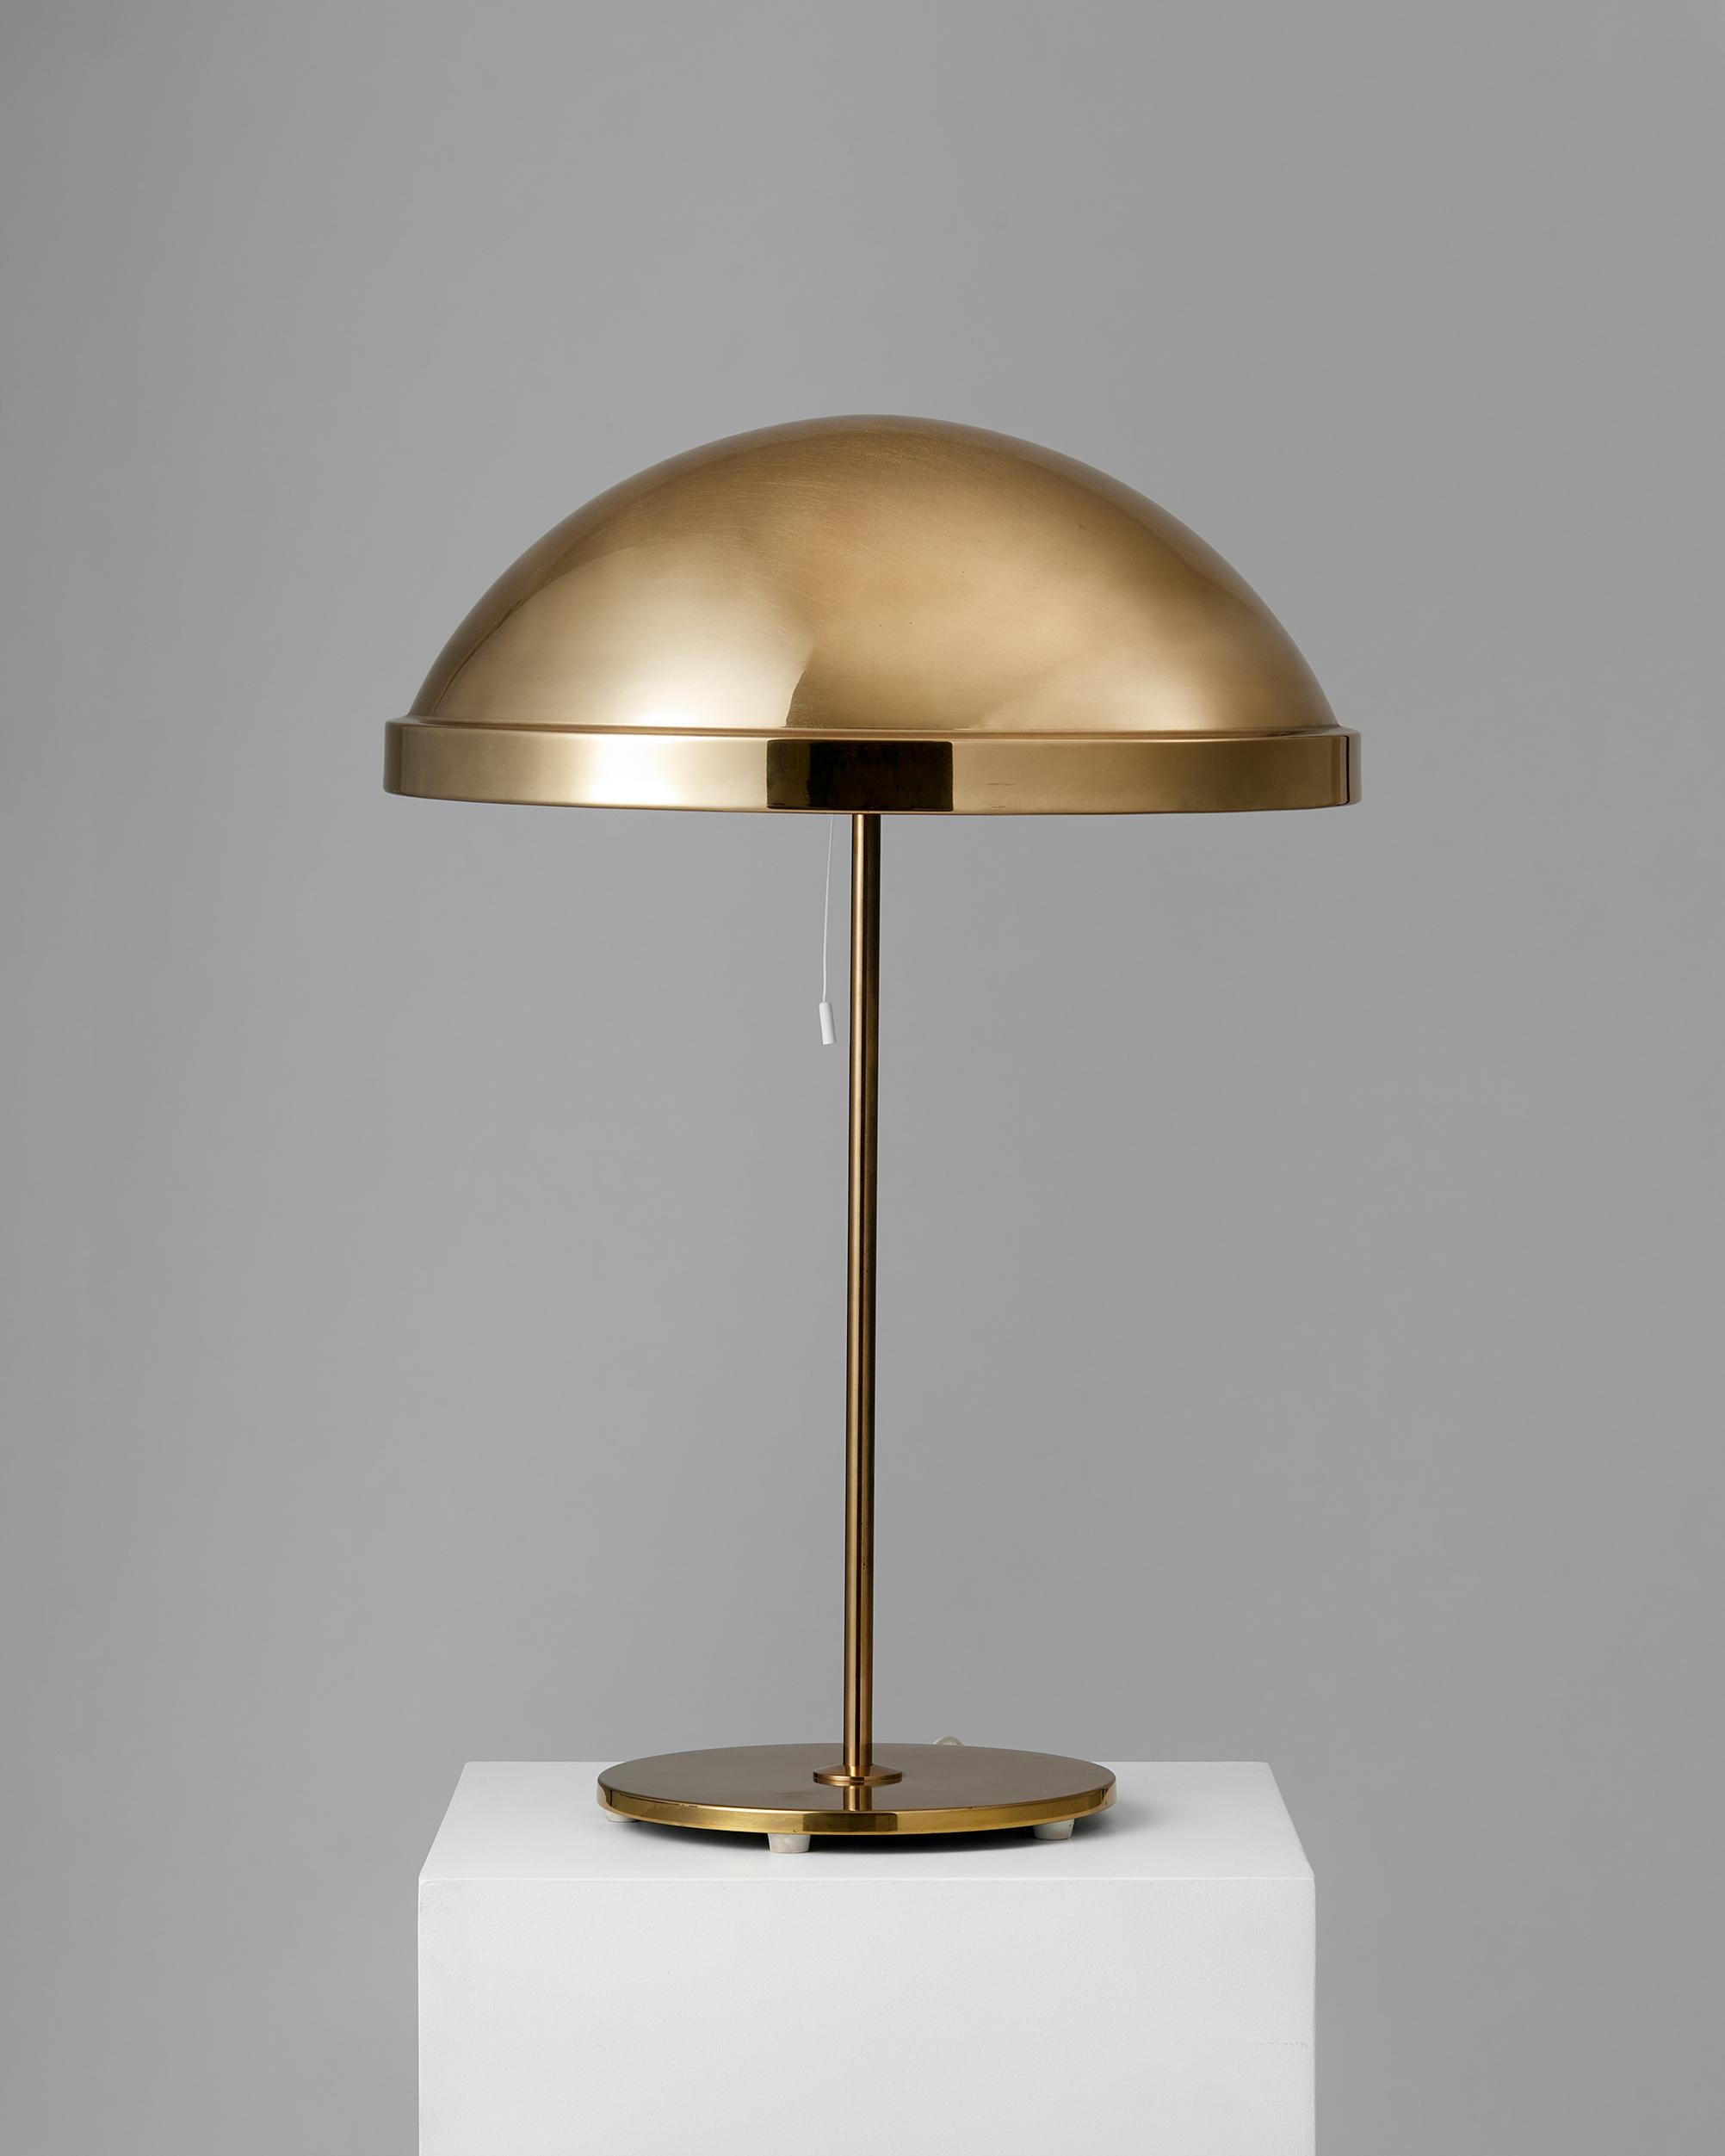 Lampe de table, anonyme pour Bergboms,
Suède, années 1960.

En laiton.

Estampillé.

Hauteur totale : 70 cm
Hauteur de l'abat-jour : 19 cm
Diamètre de l'abat-jour : 43 cm
Diamètre de la base : 23 cm